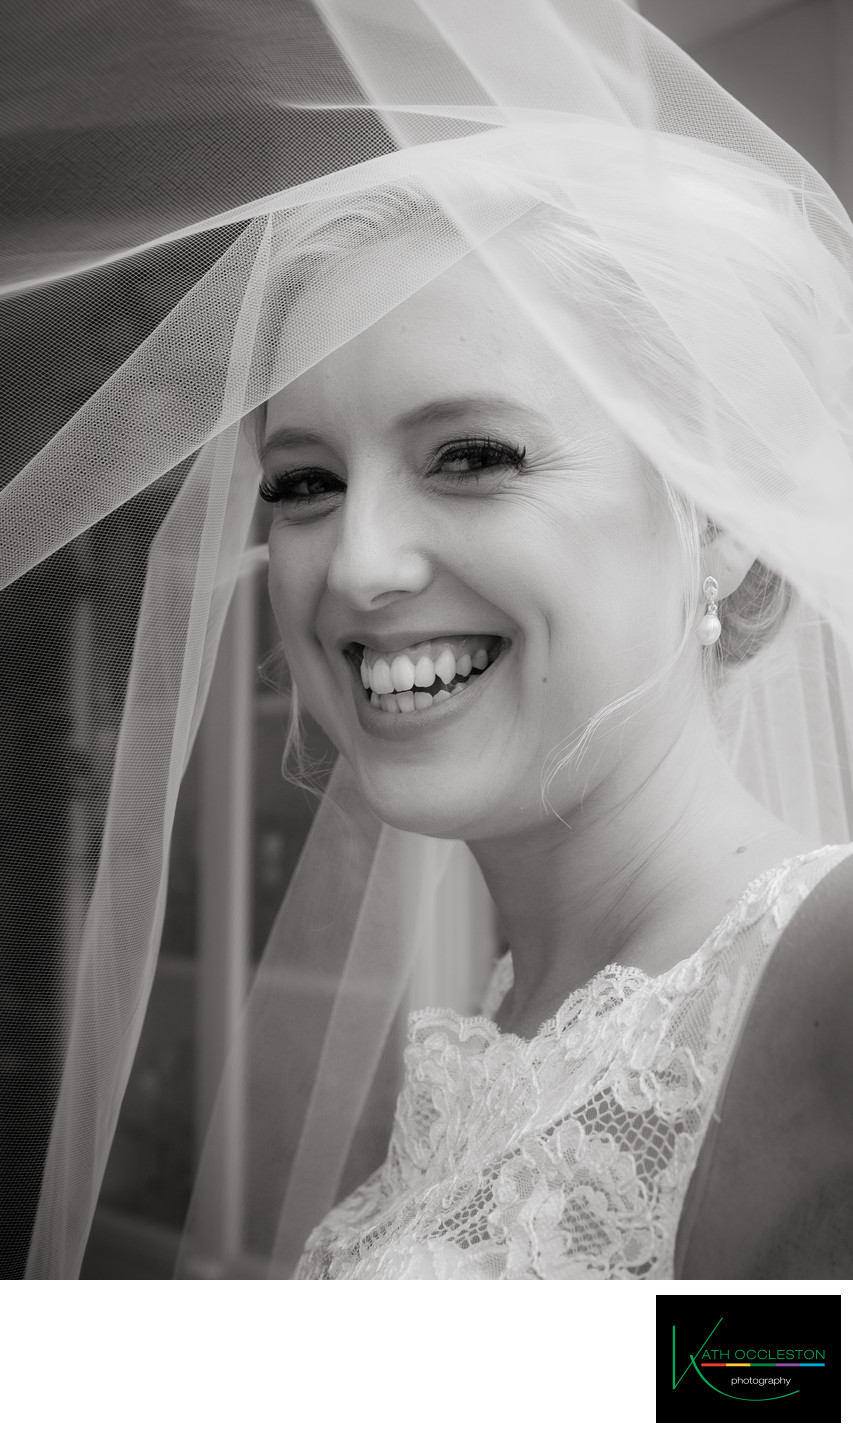 Happy bride under the veil!